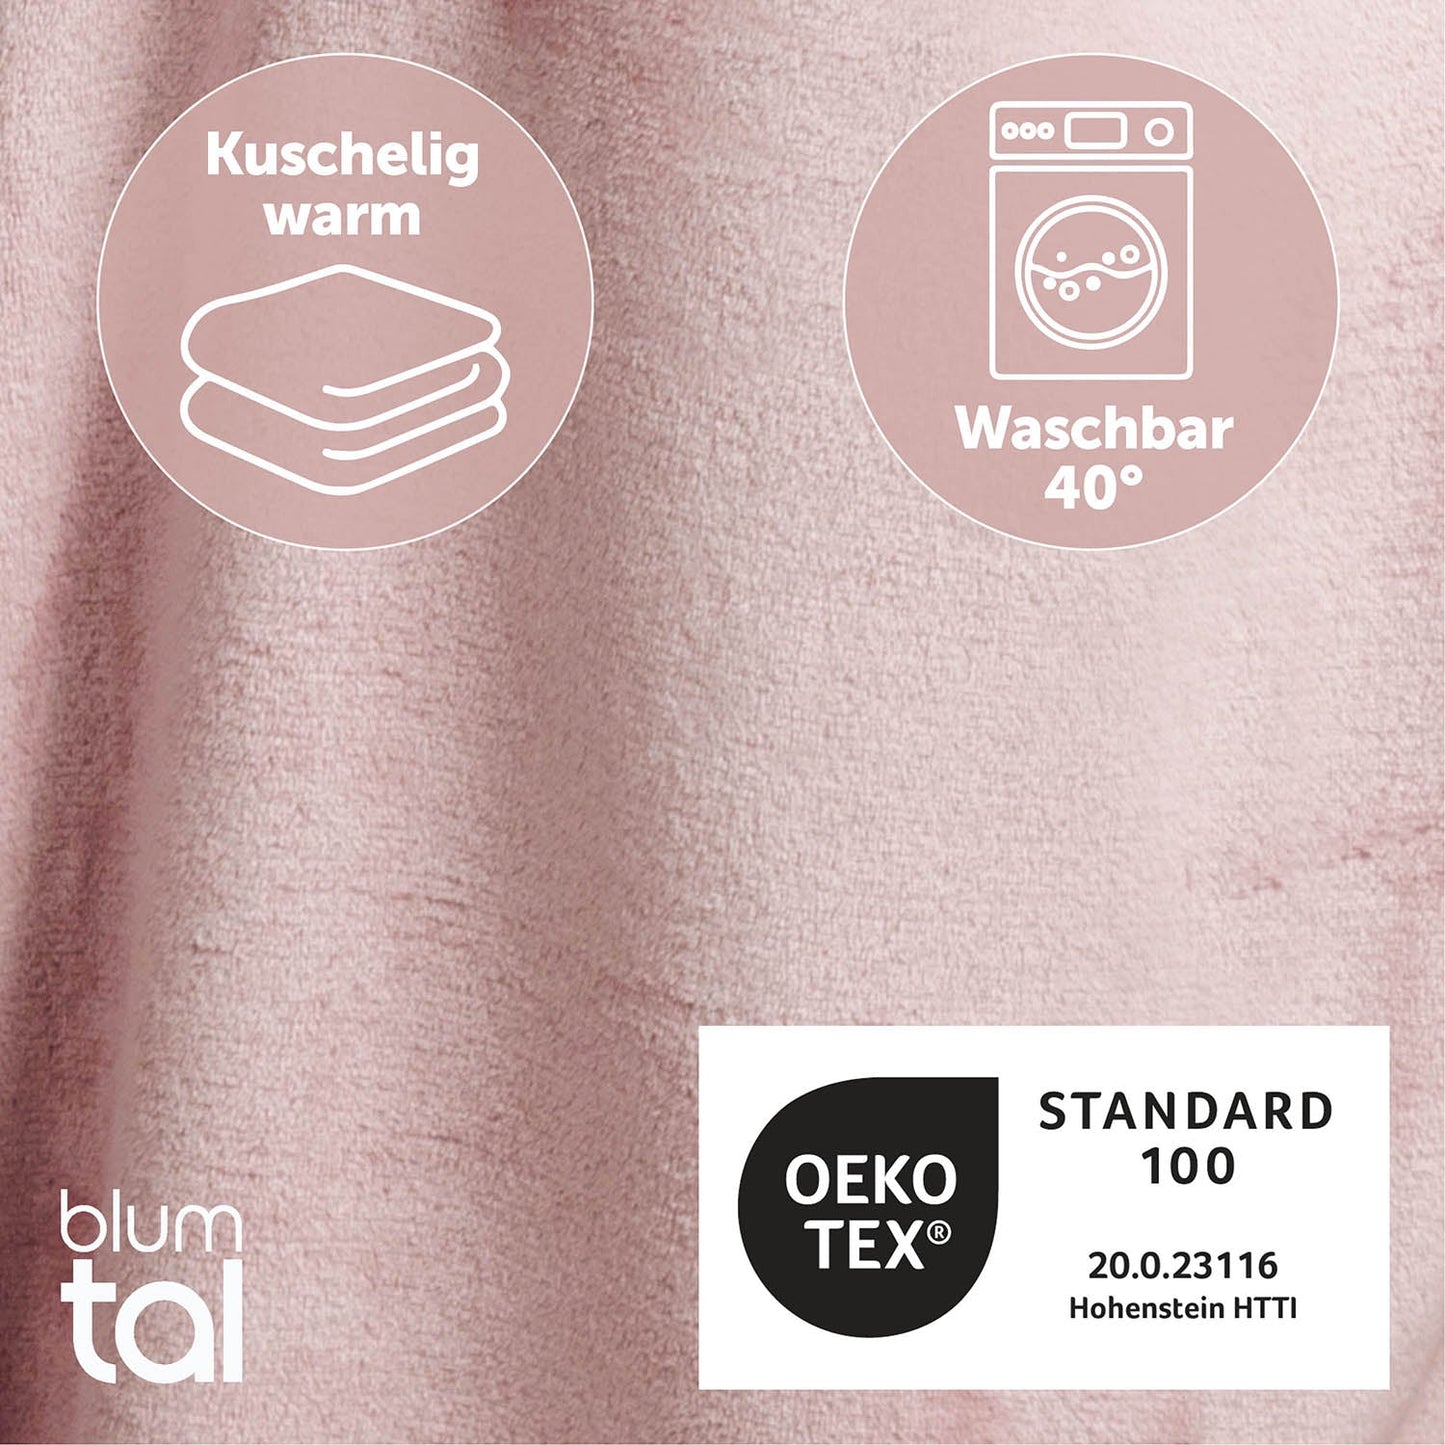 Detailansicht des rosa flauschigen Stoffes mit Symbolen für Kuschelwärme und Waschbarkeit bei 40 Grad sowie OEKO-TEX Standard 100 Zertifizierung.